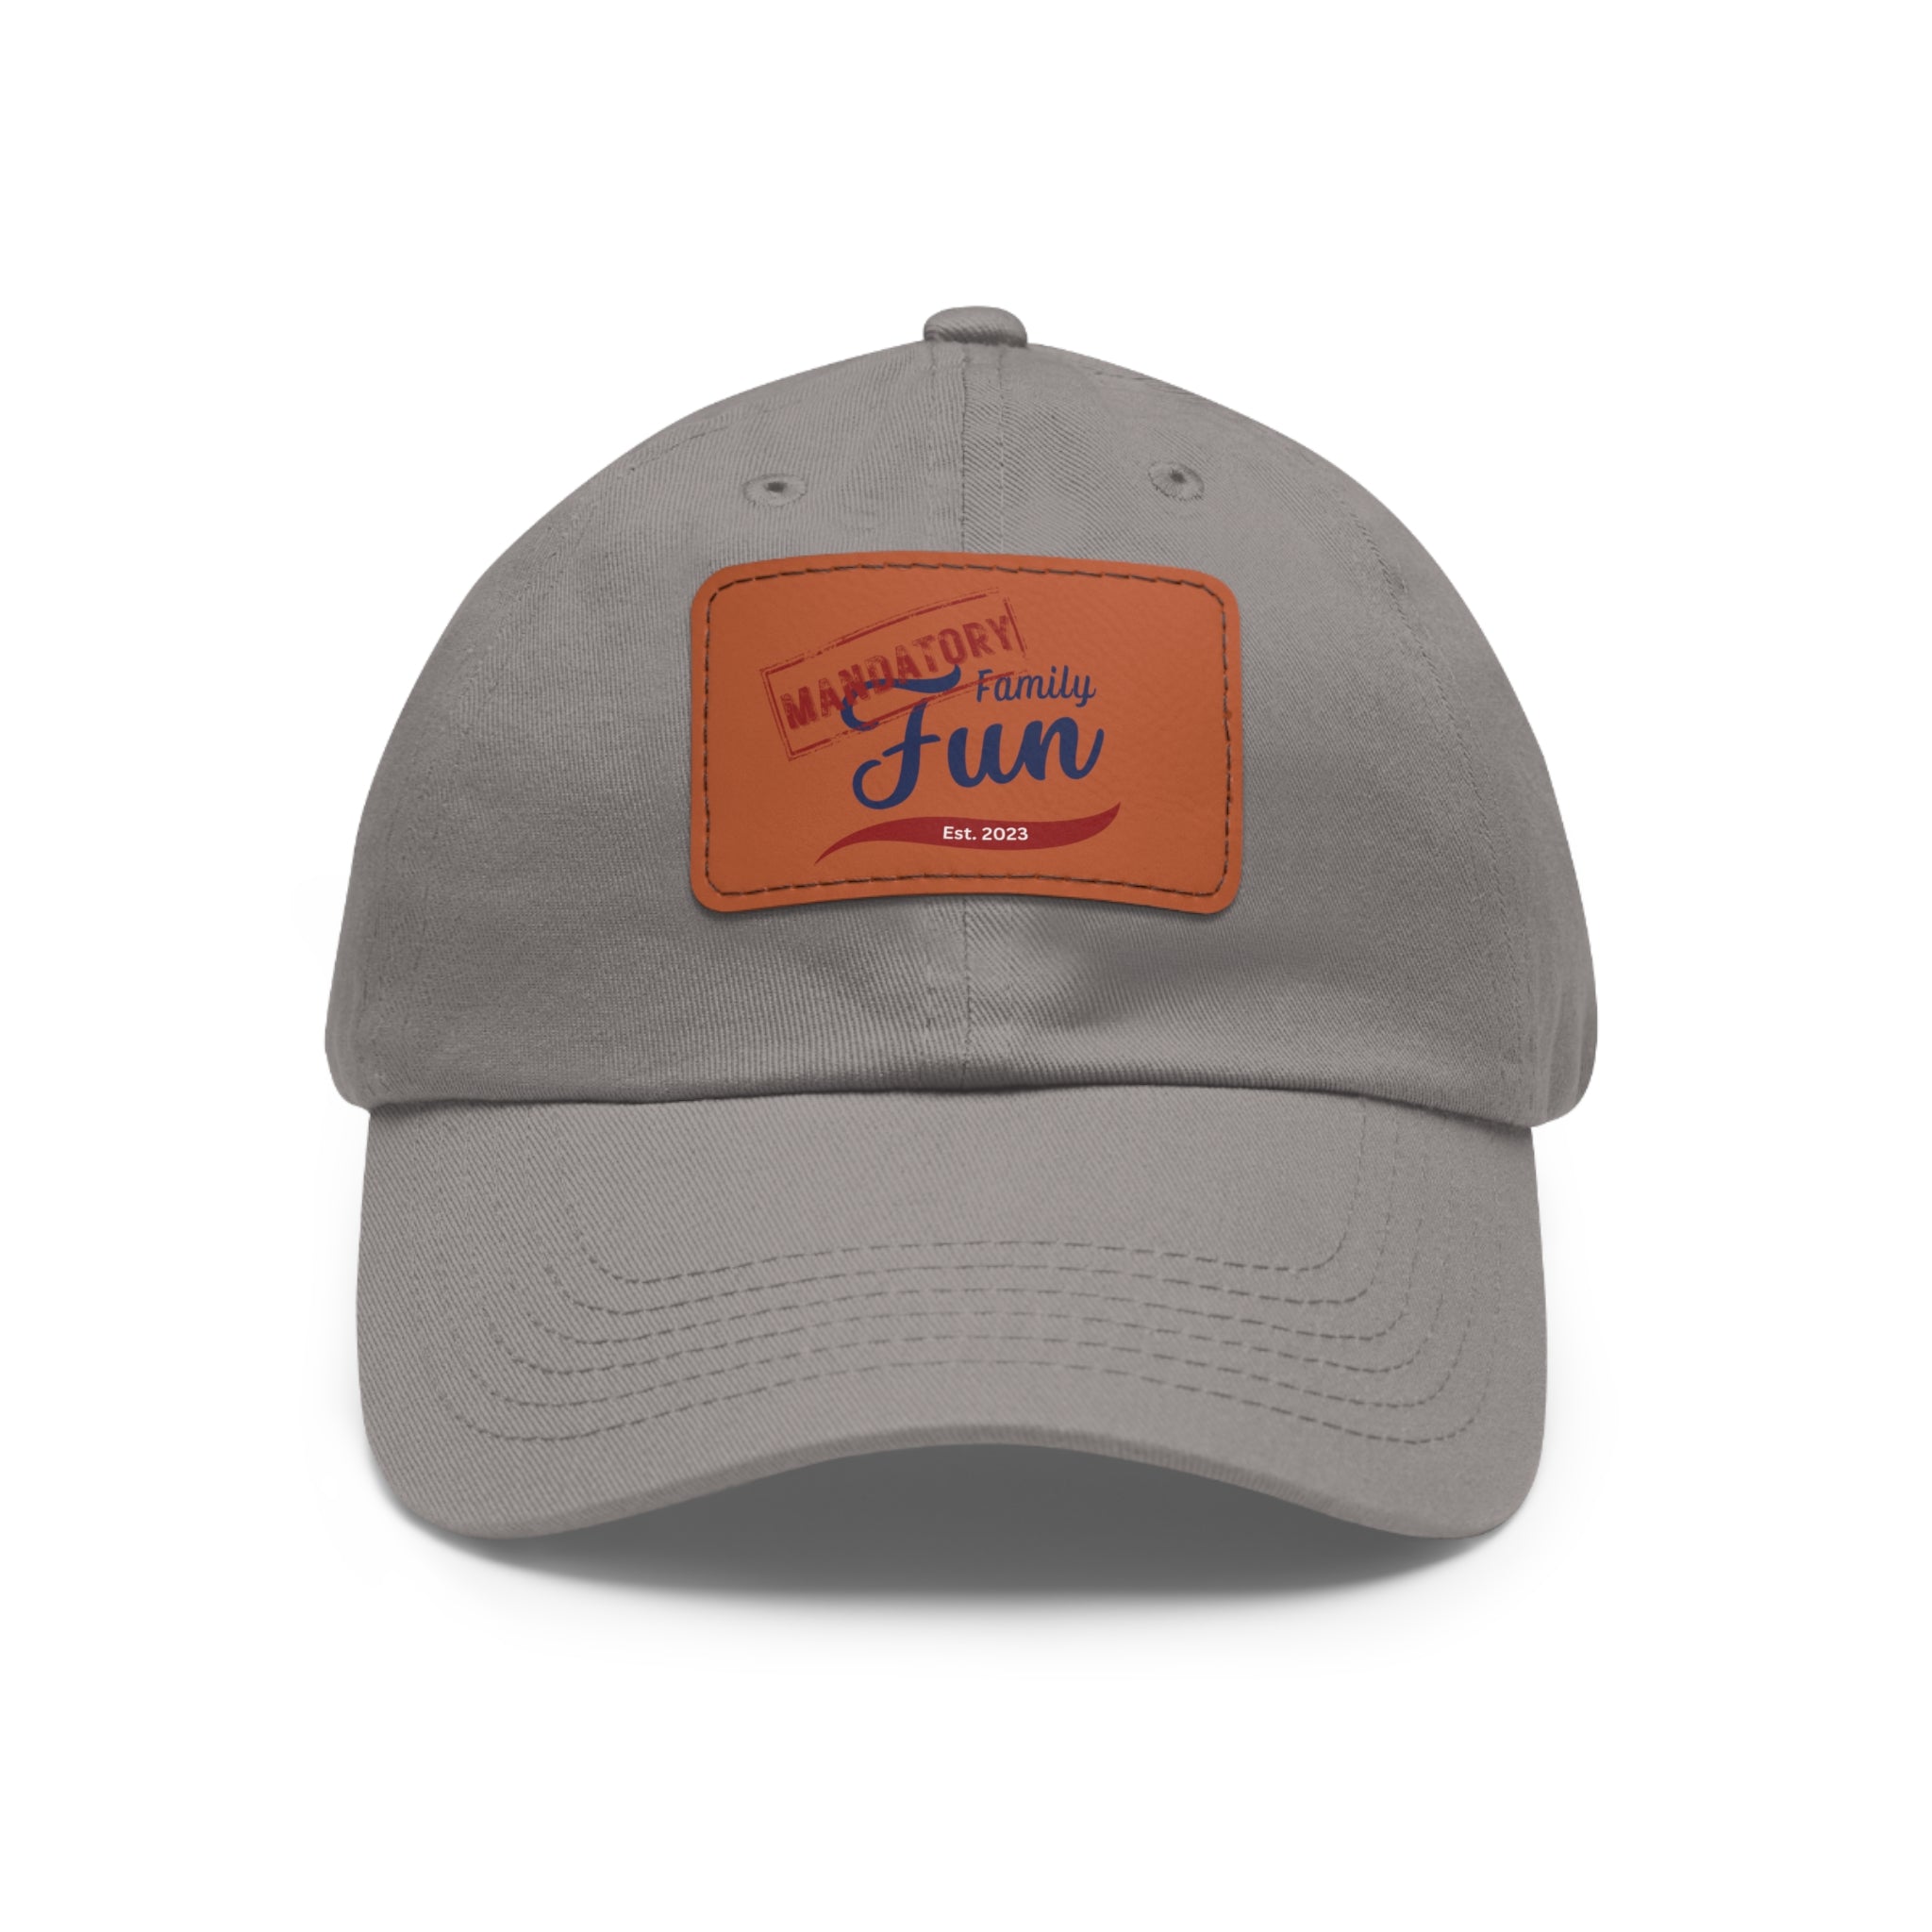 Mandatory Family Fun Hat